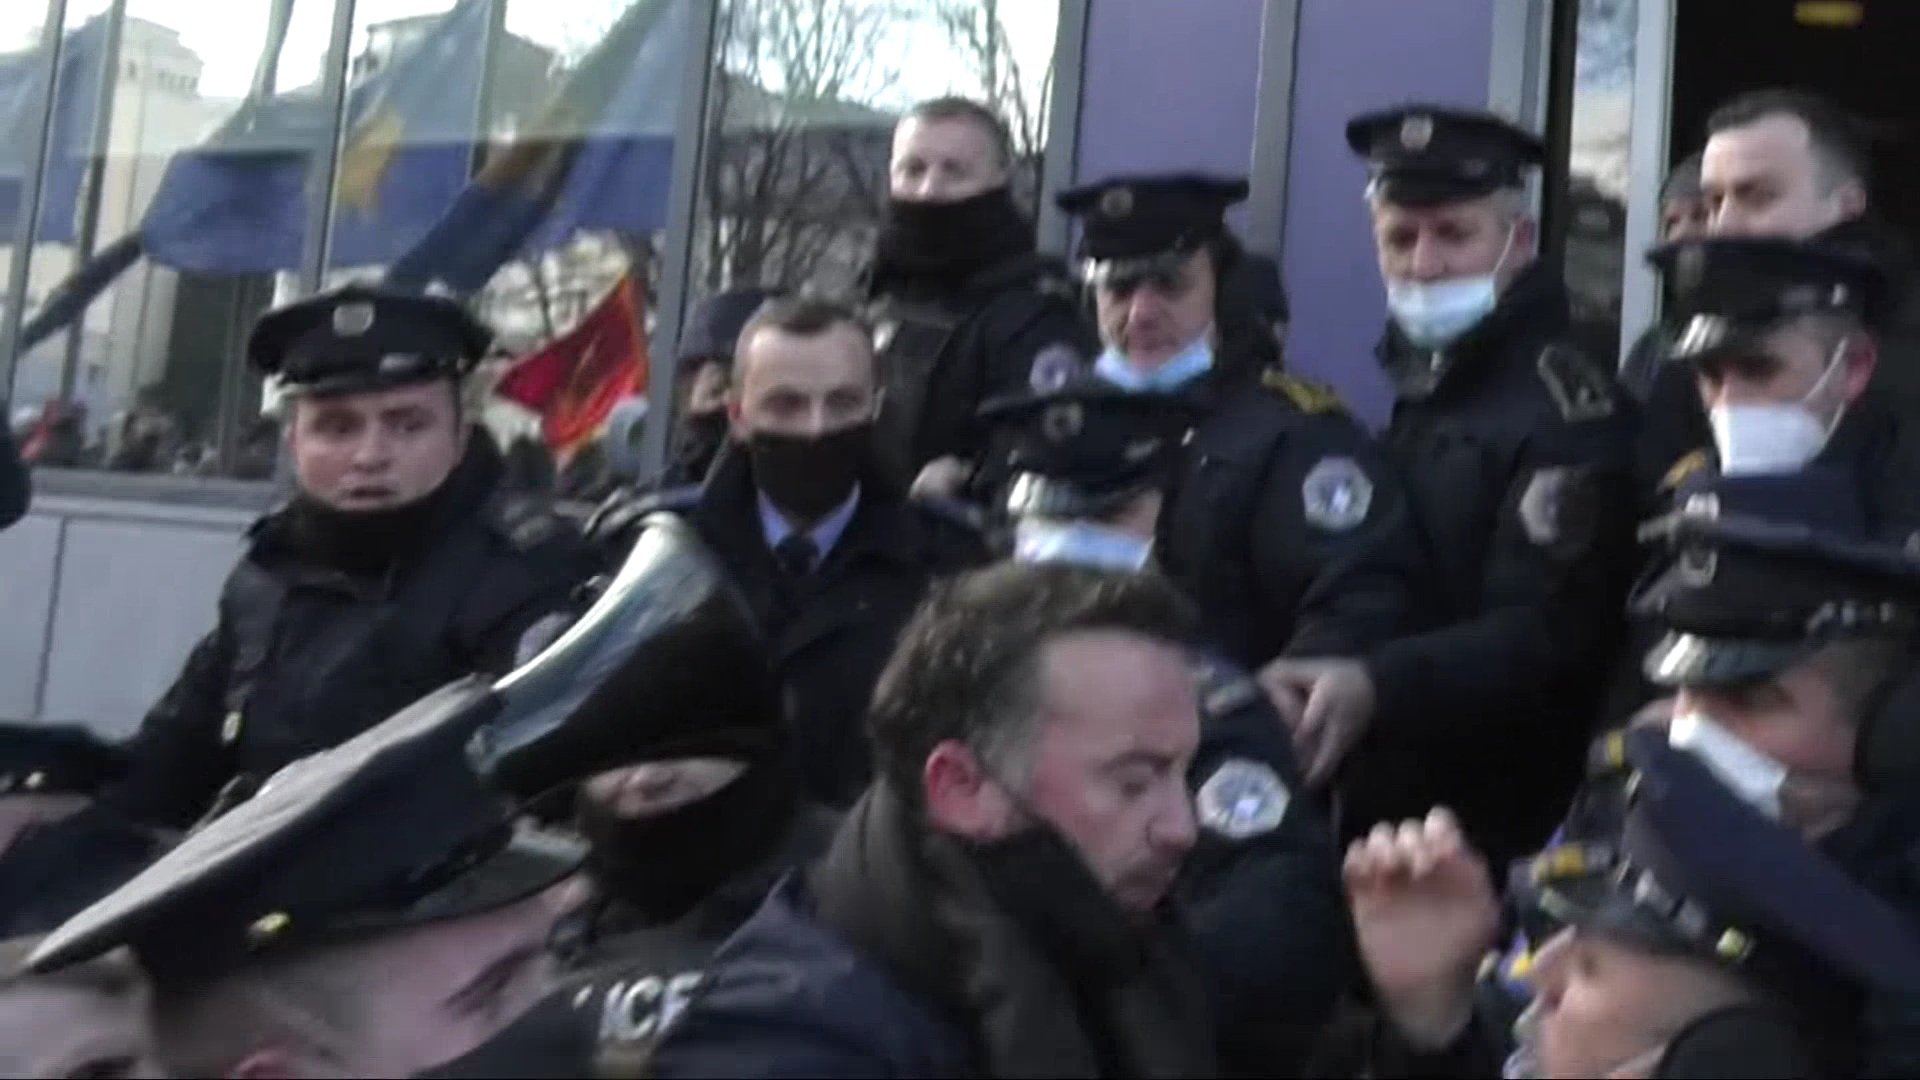 PSD nxjerr pamjet ku policët e përplasin Dardan Molliqajn (VIDEO)